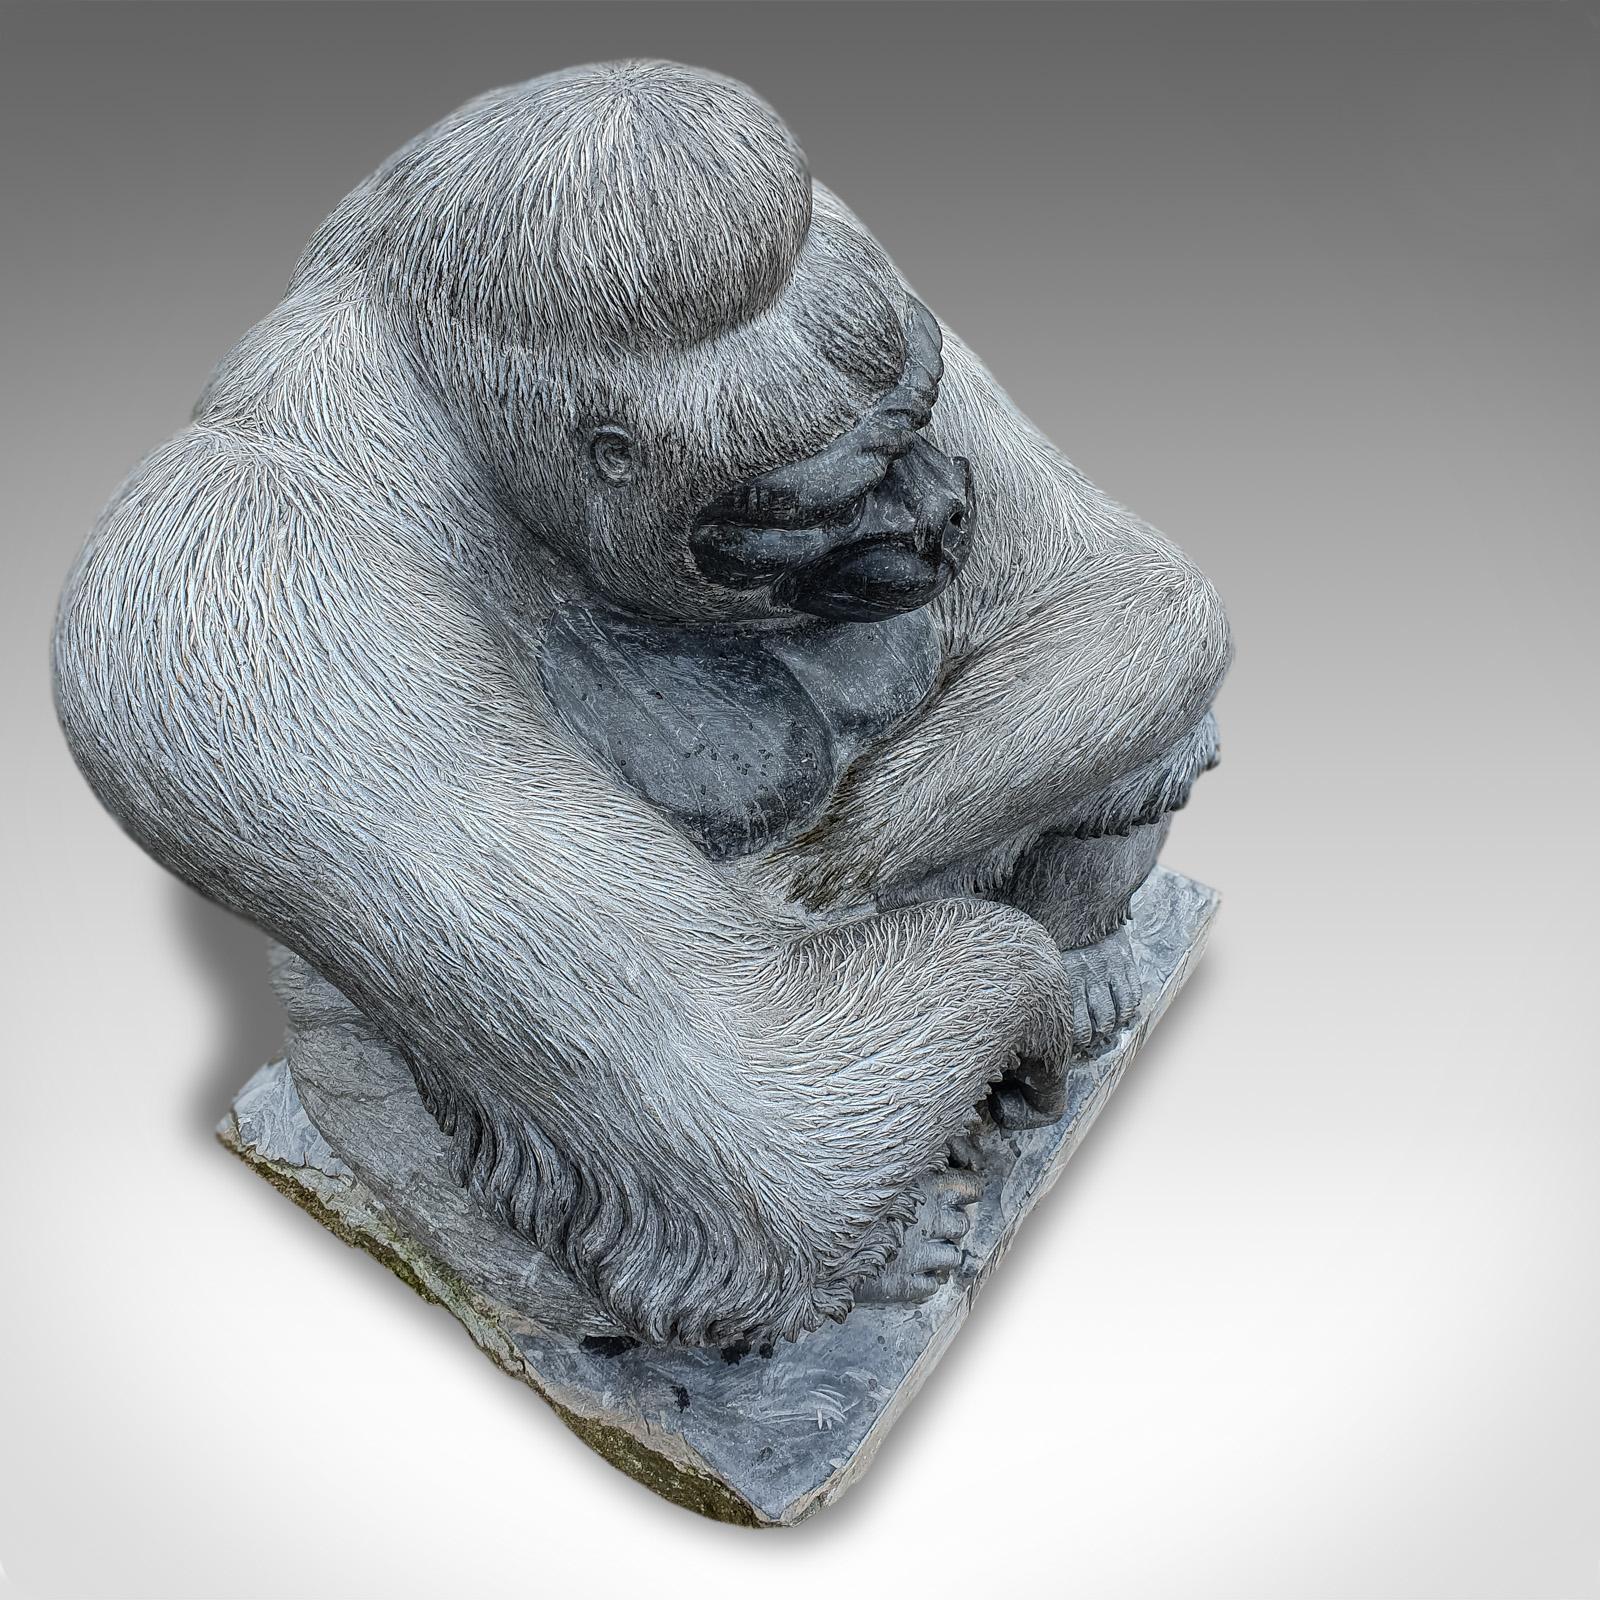 stone gorilla statue